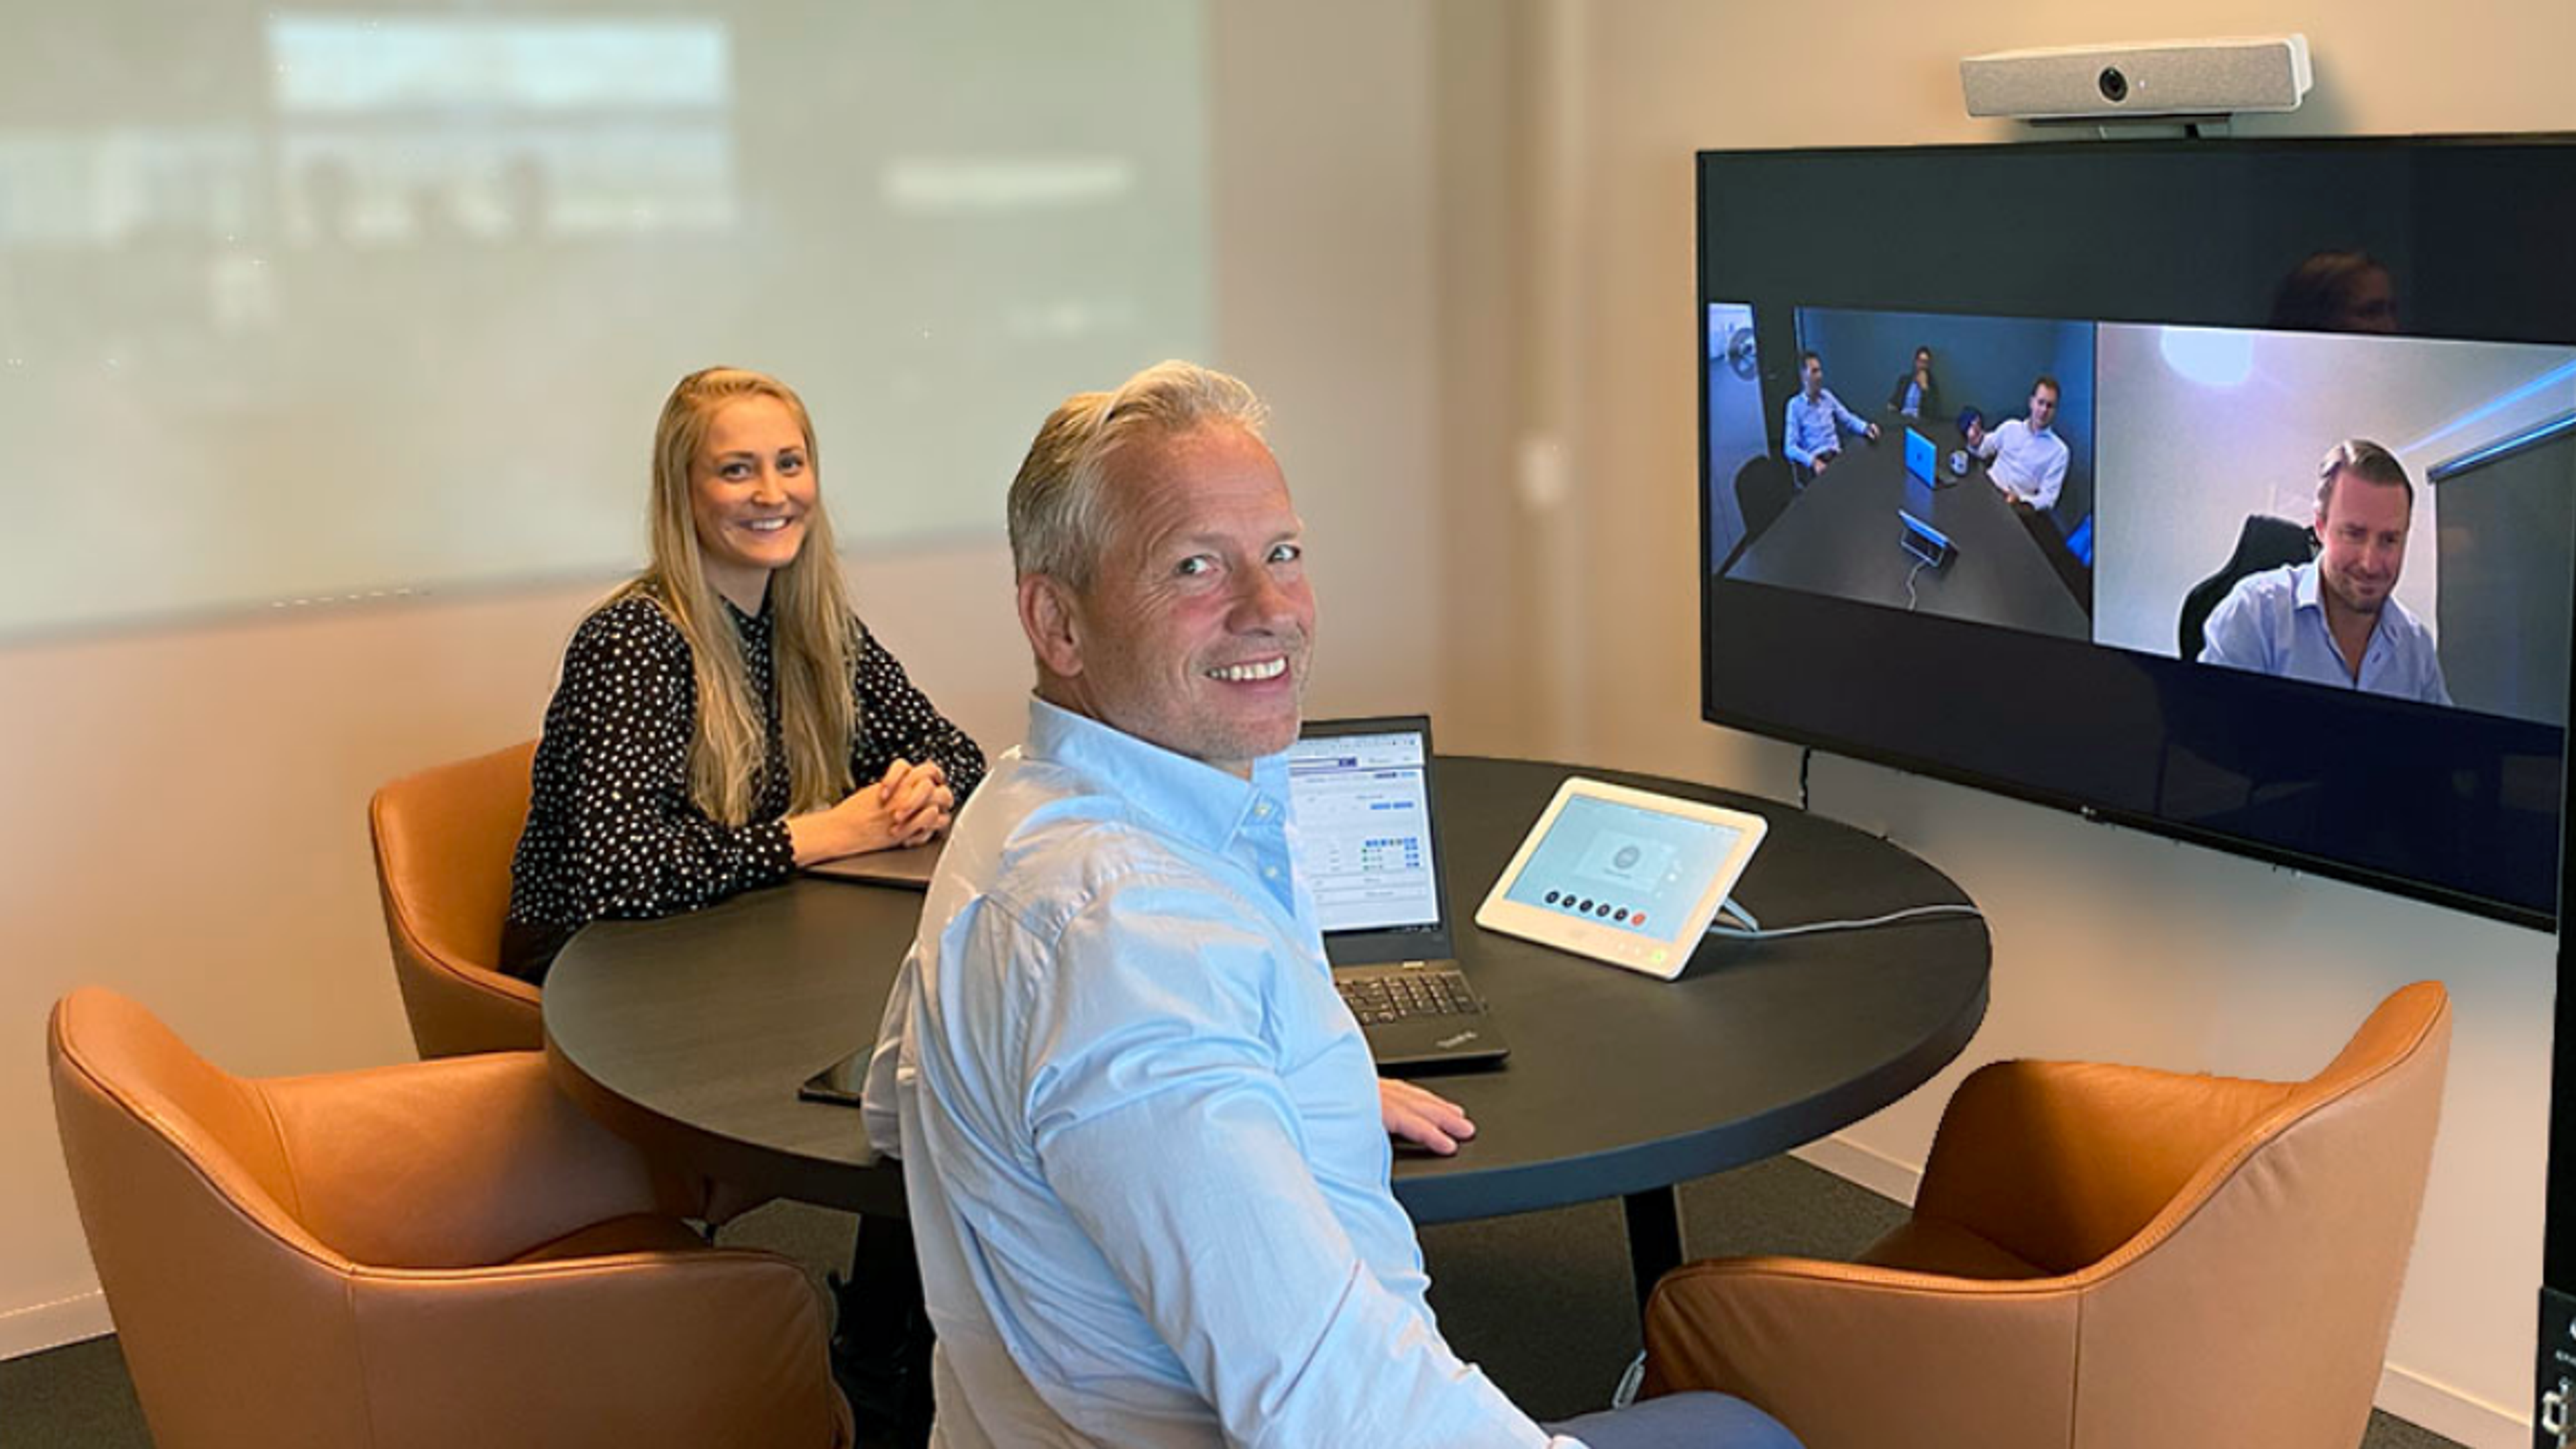 To mennesker sitter sammen i et rom og deltar i et digitalt møte fra en skjerm på veggen